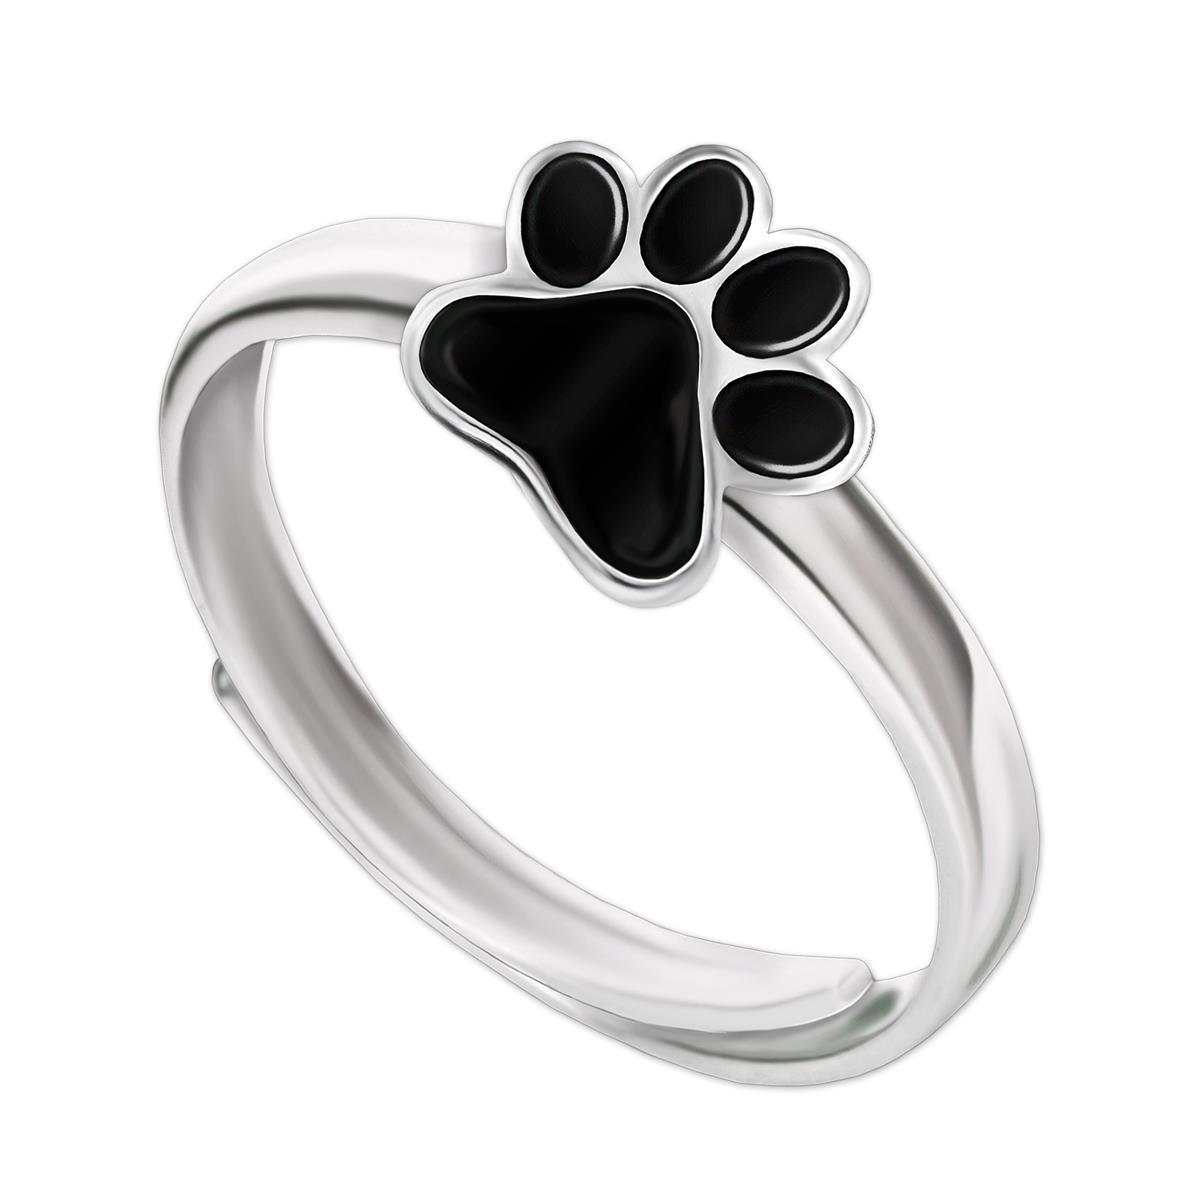 Hunde Pfote Ring schwarz lackiert glänzend 925 Sterling Silber universell einstellbare Größe